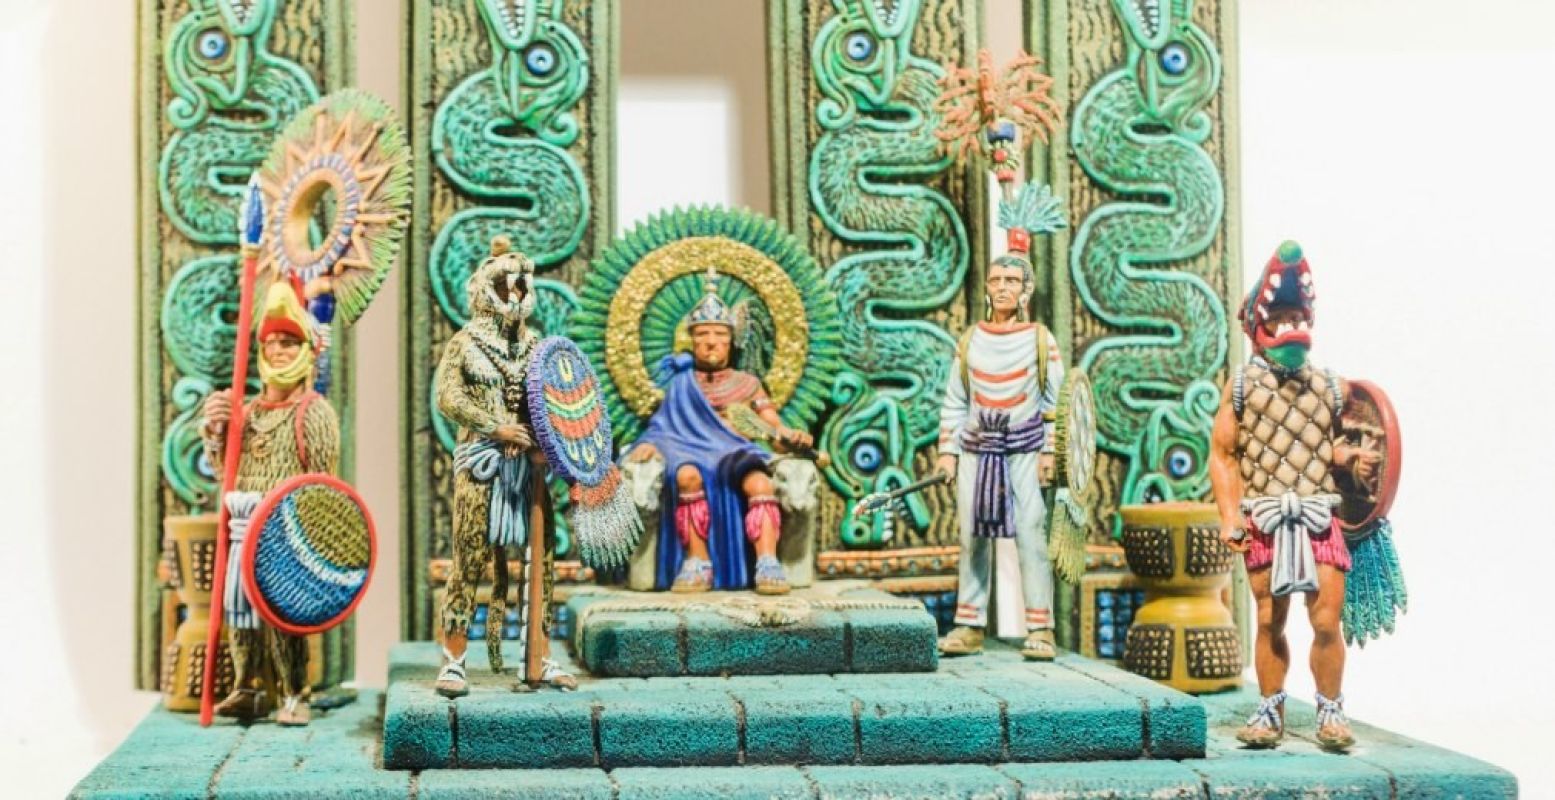 Verschijn voor de troon van de Aztekenkoning. Foto: Nationaal Tinnen Figuren Museum